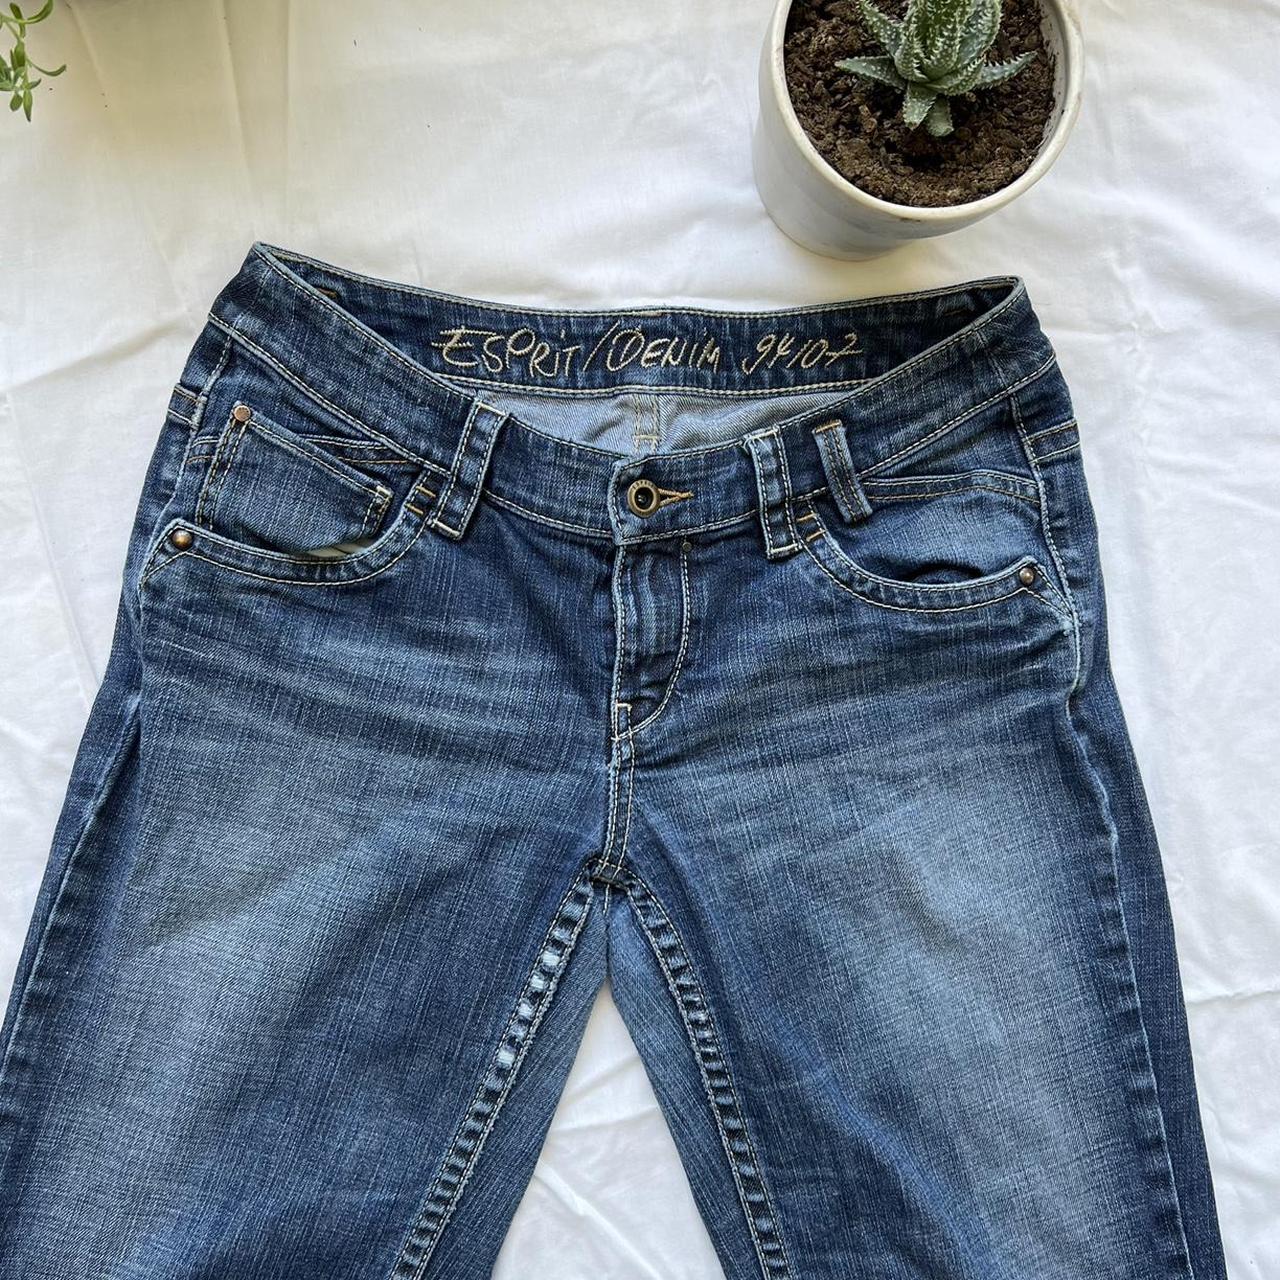 Surrey Had Implement Vintage Esprit low rise bootcut jeans size... - Depop